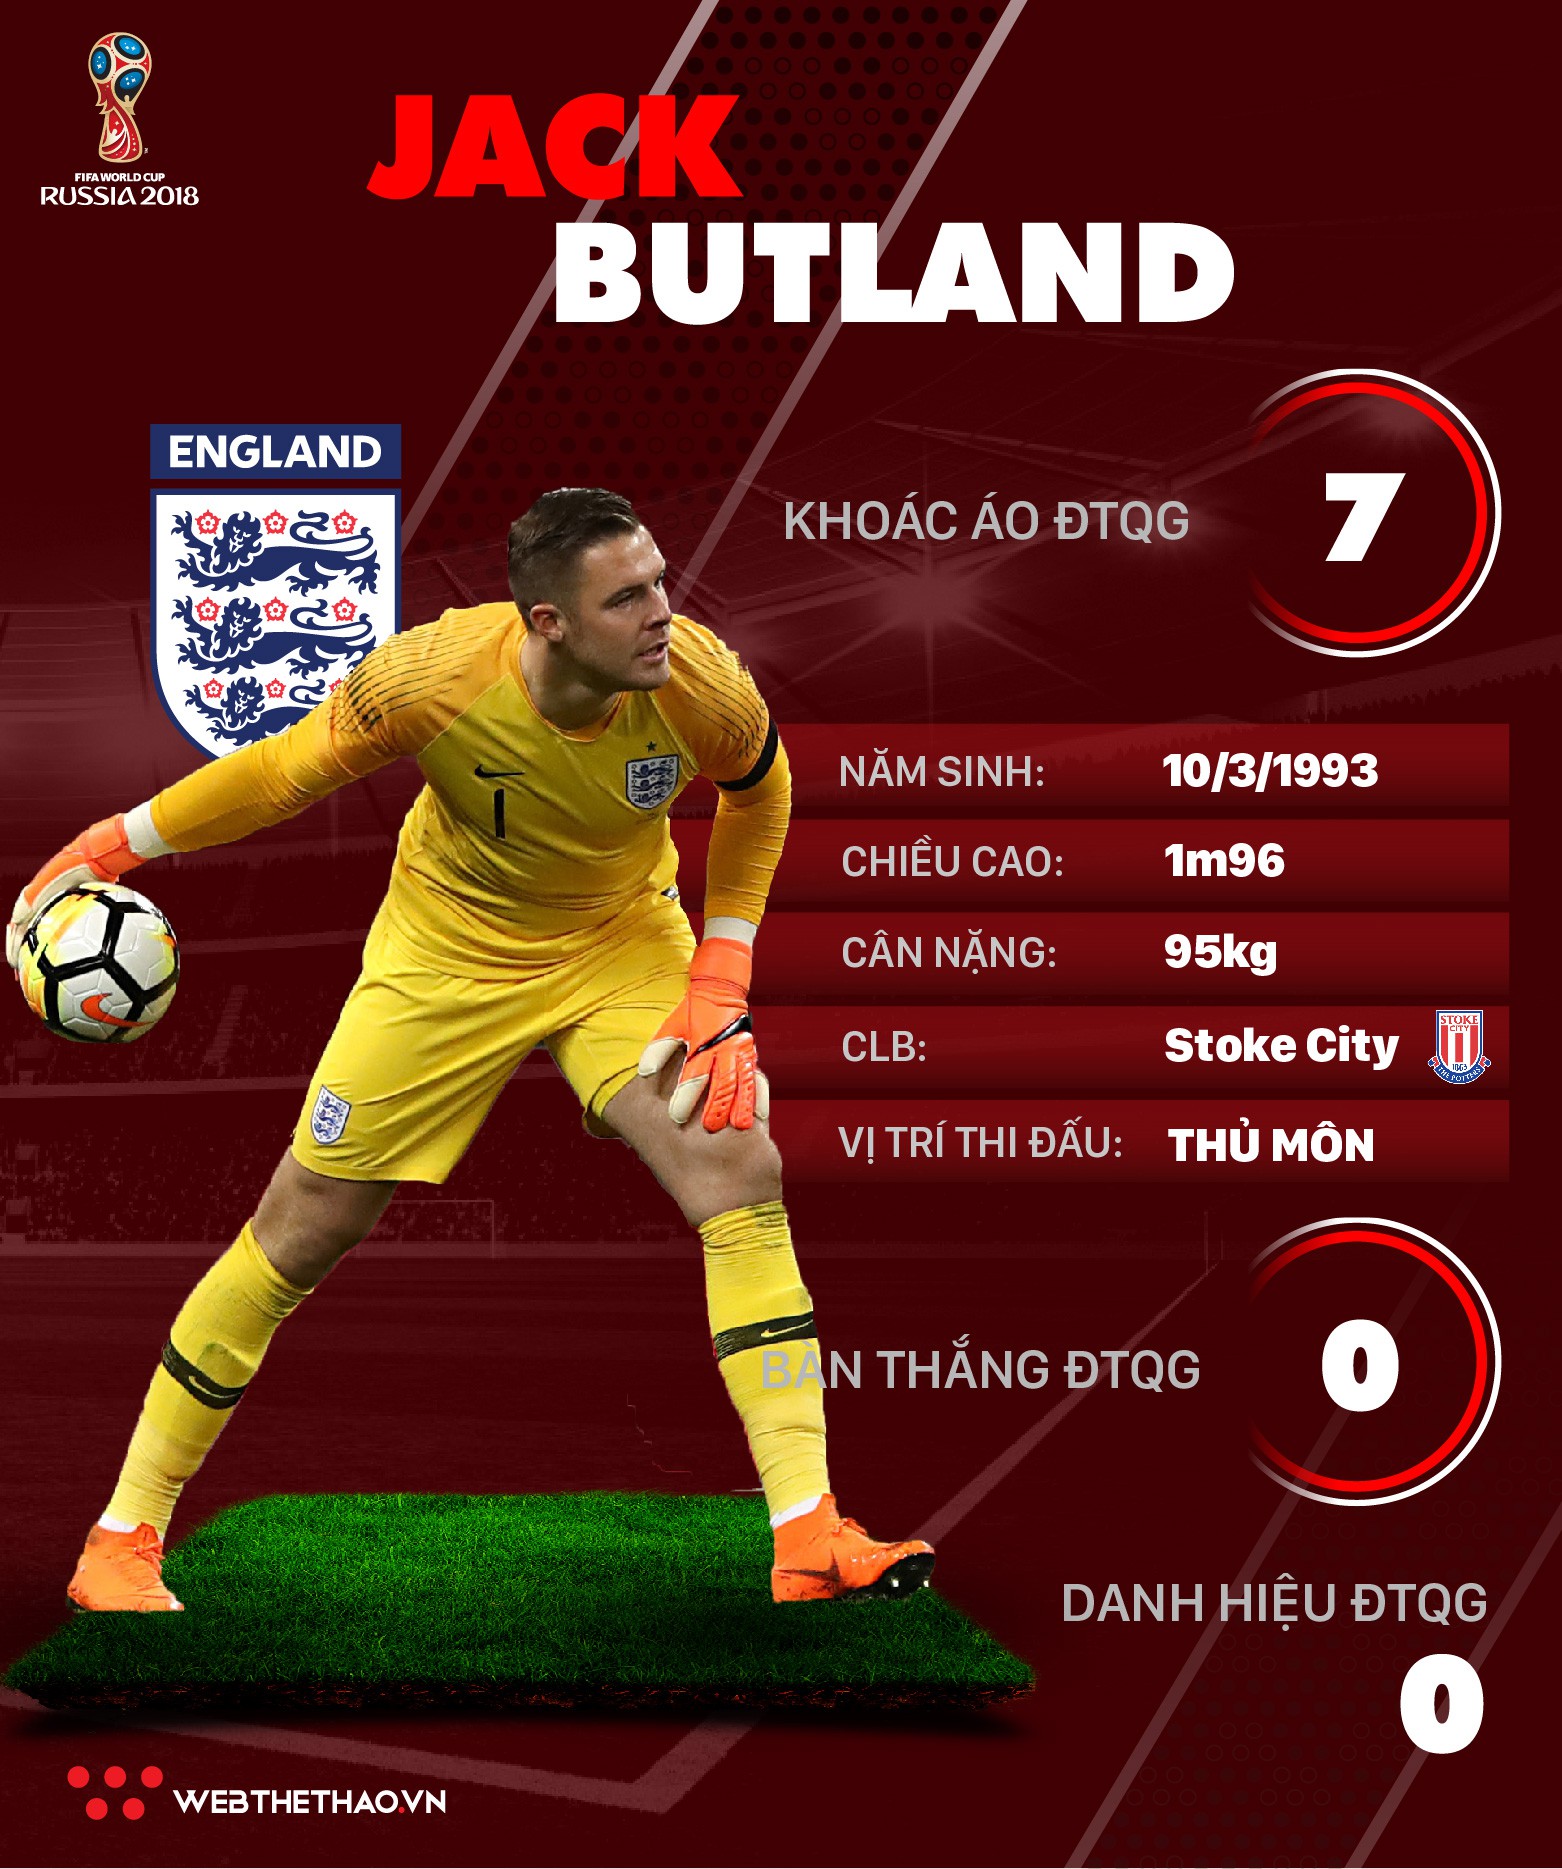 Thông tin cầu thủ của Jack Butland ĐT Anh dự World Cup 2018